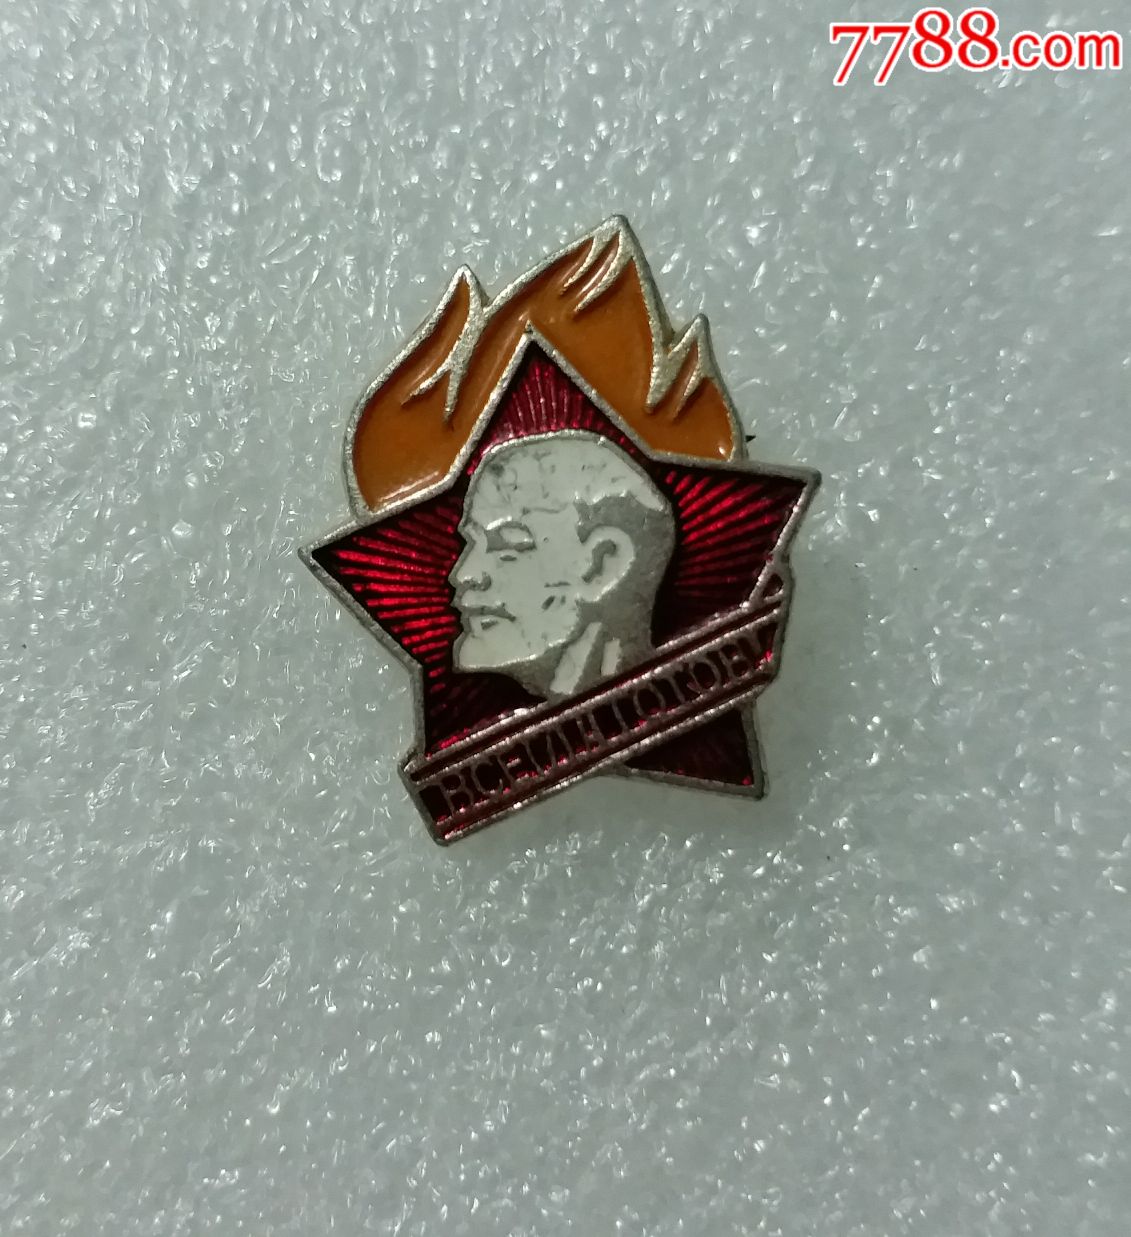 苏联列宁徽章